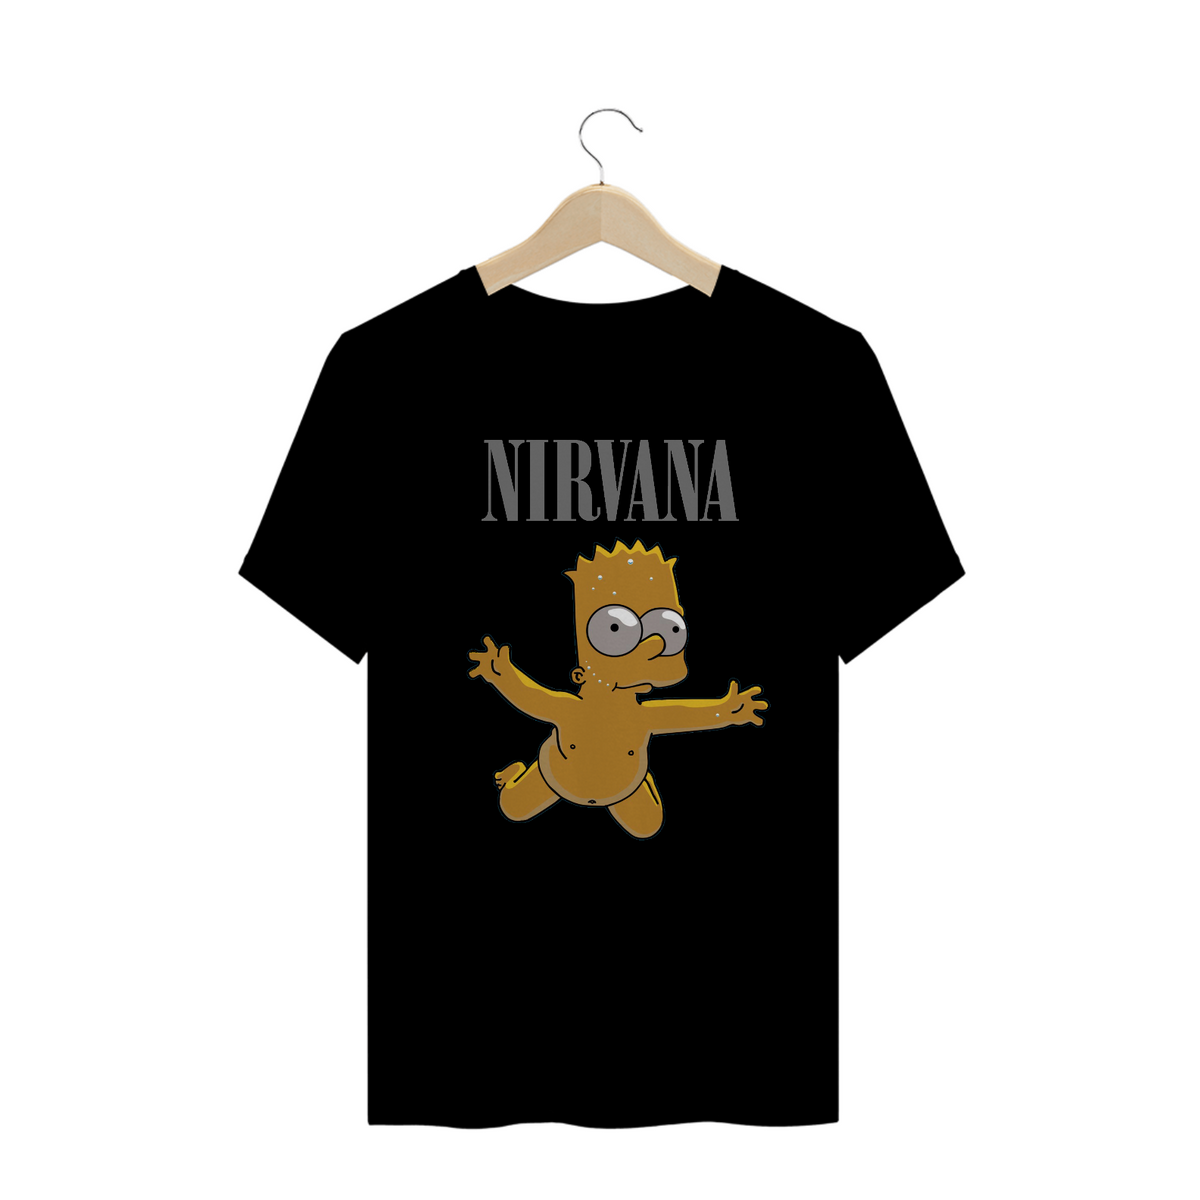 Nome do produto: Bandas - Camisa Nirvana Bart